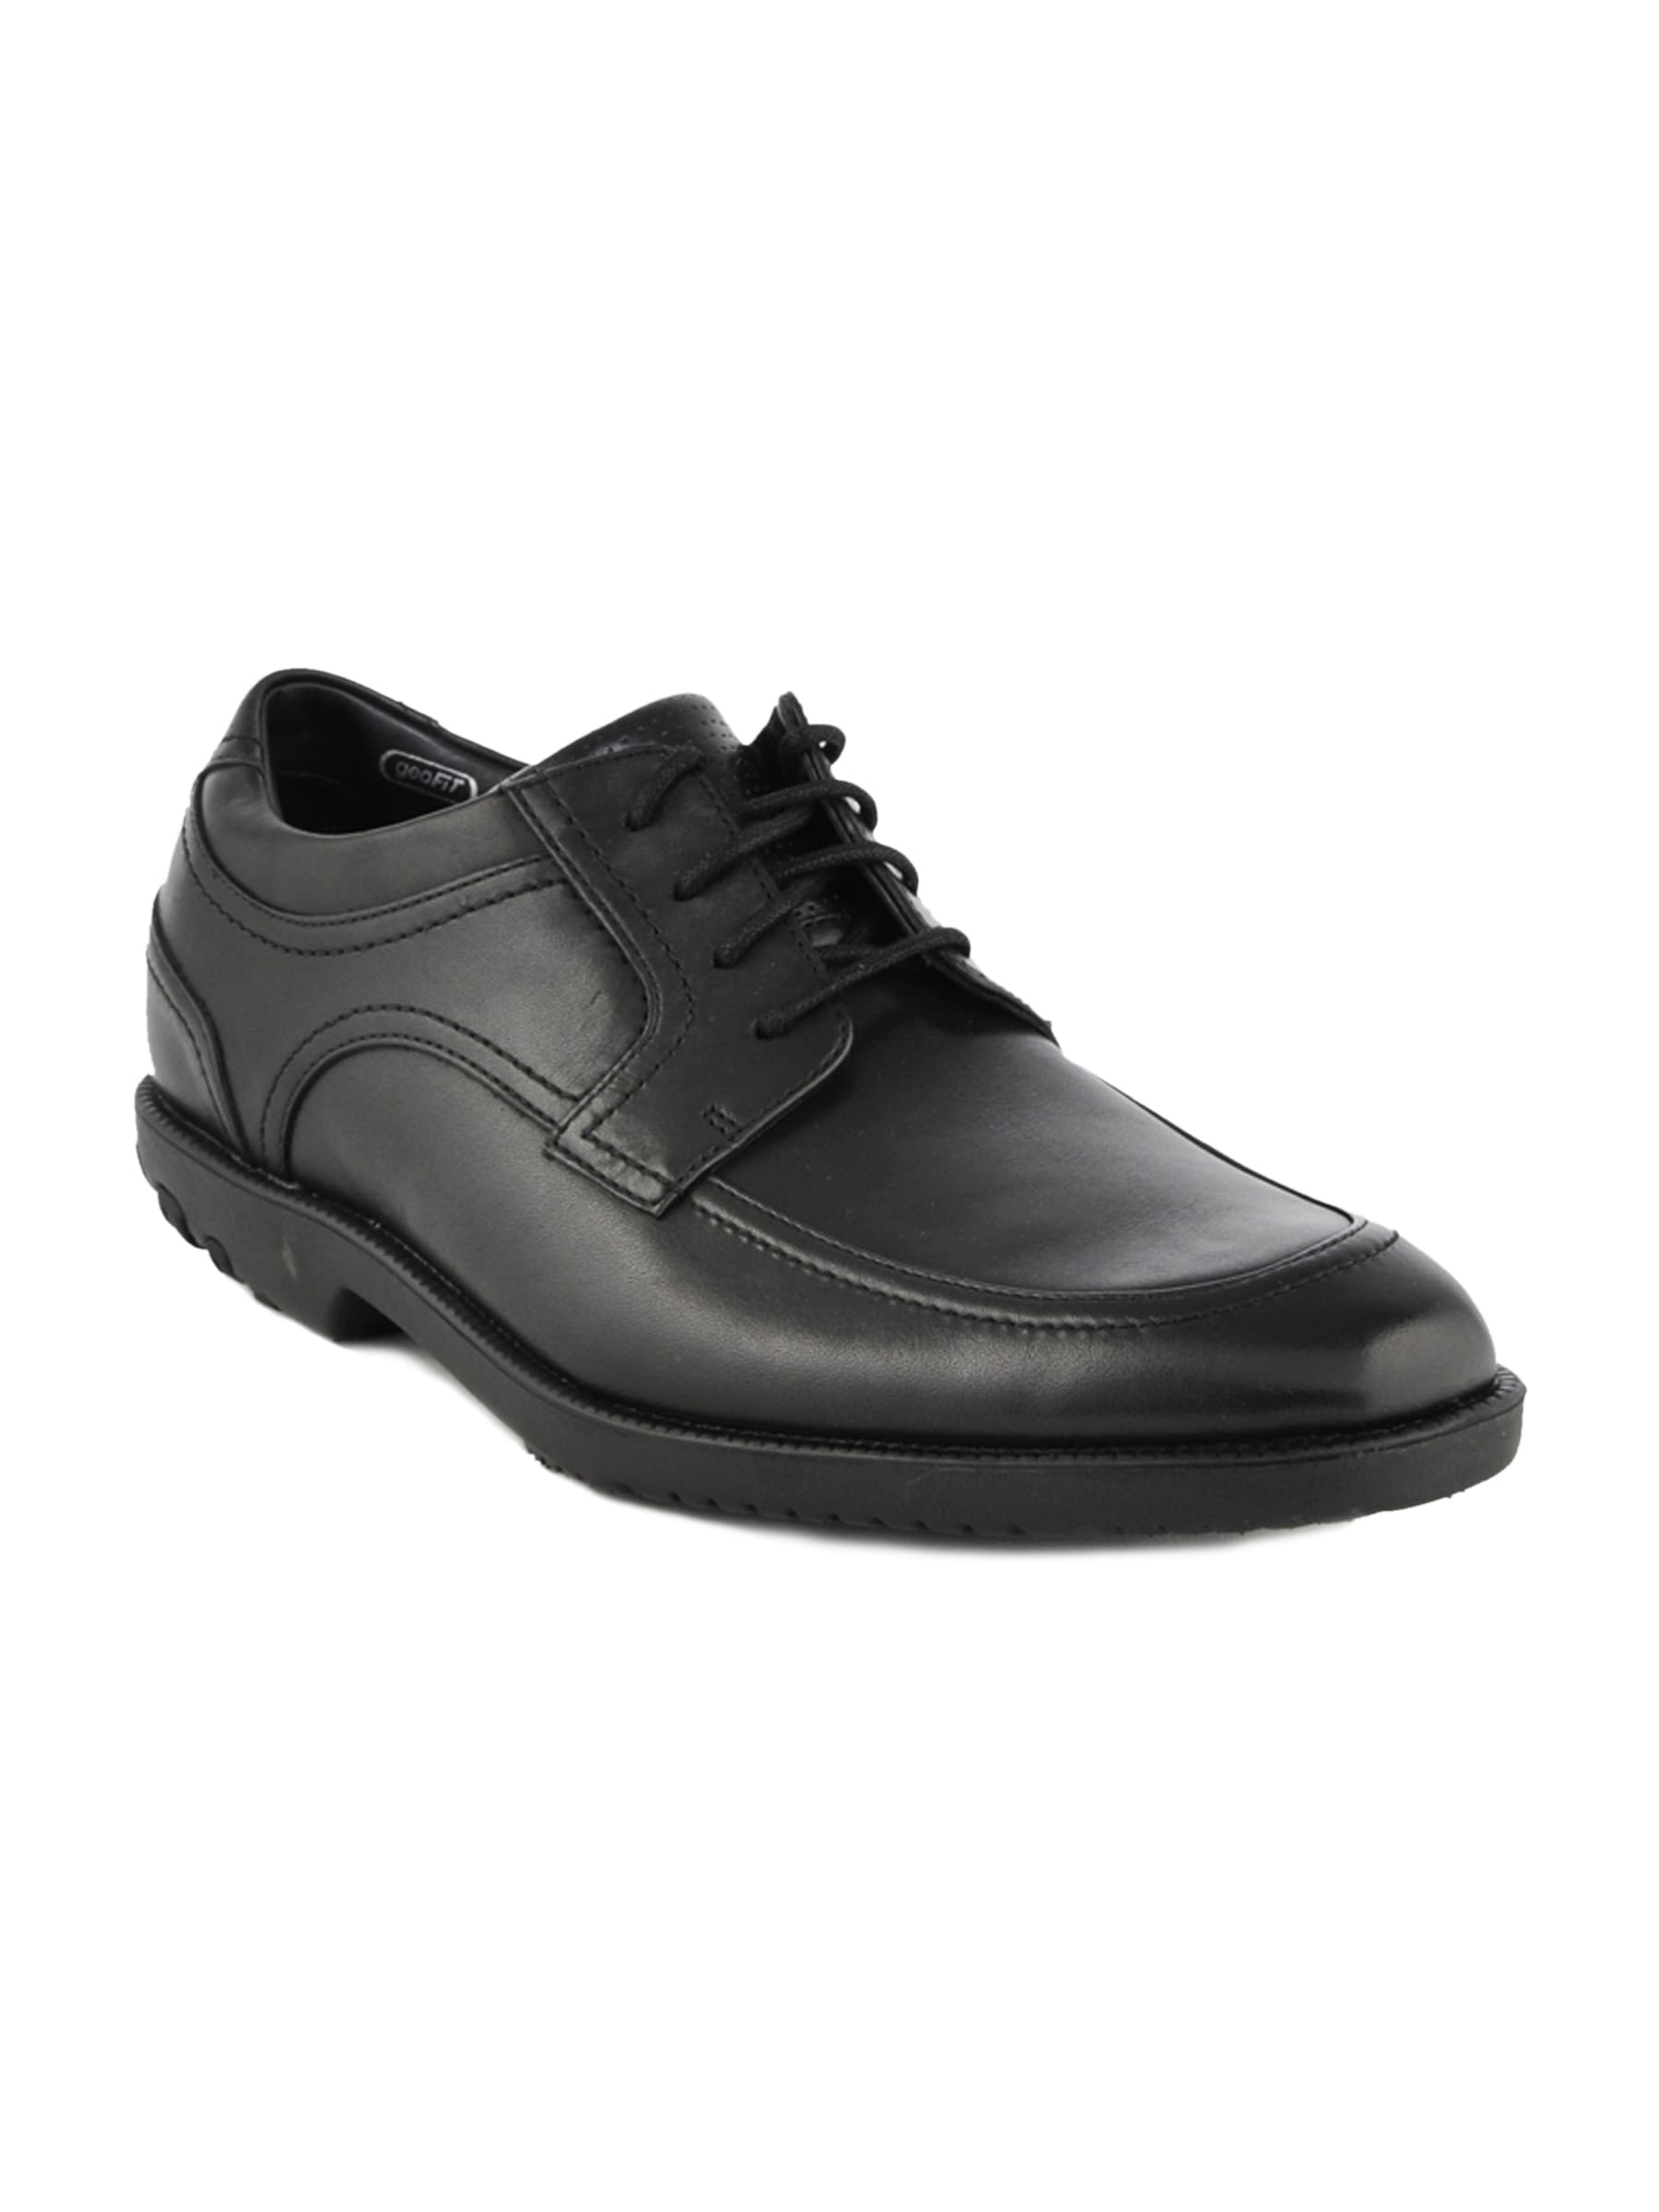 Rockport Men Drsp Moc Front Black Formal Shoes